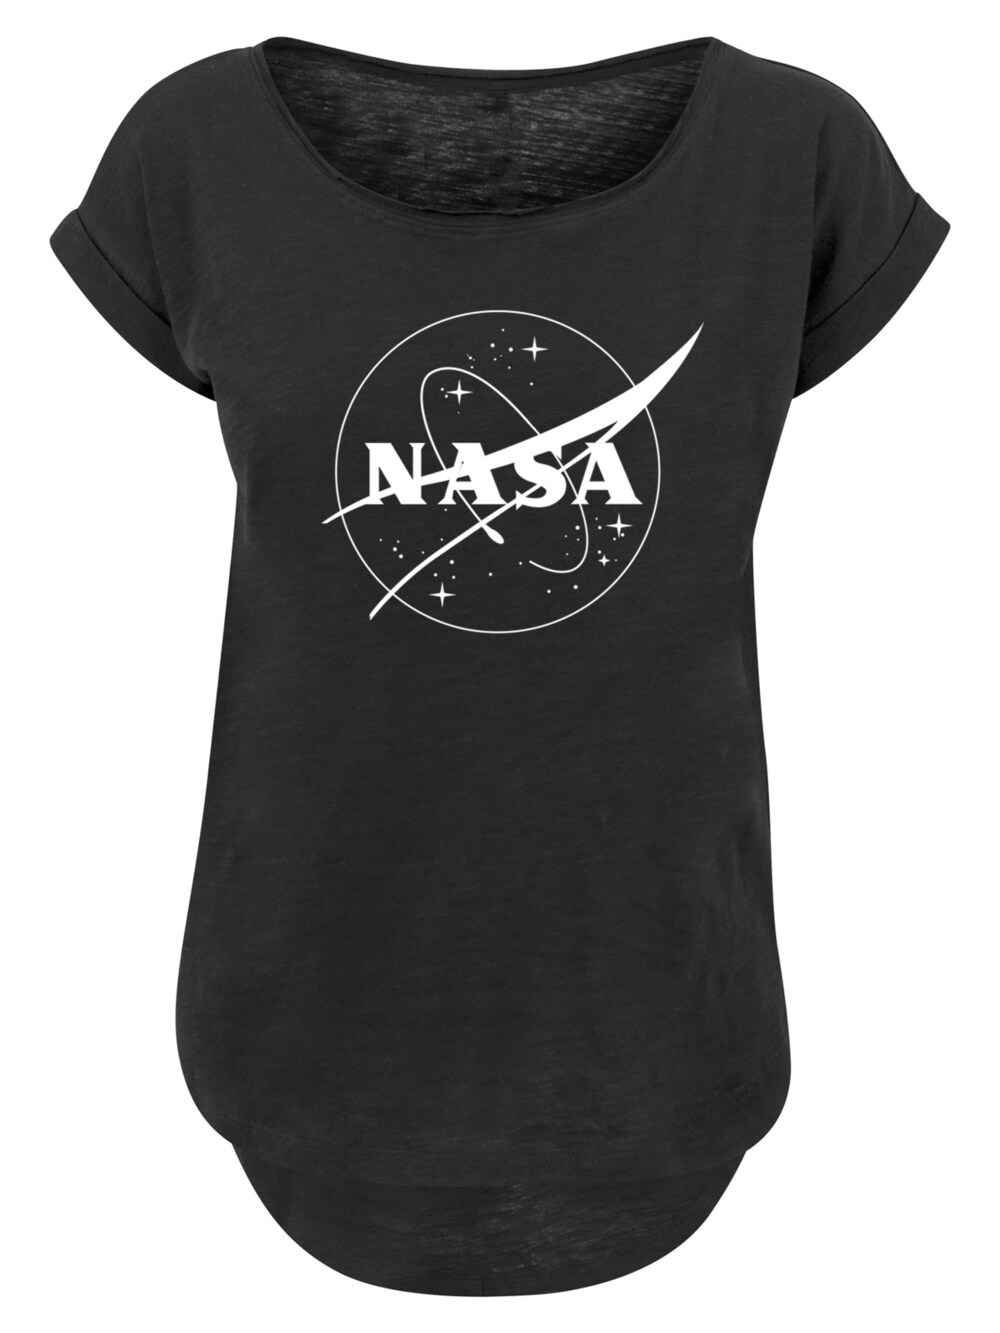 Рубашка F4Nt4Stic NASA Classic Insignia Logo Monochrome, черный цена и фото